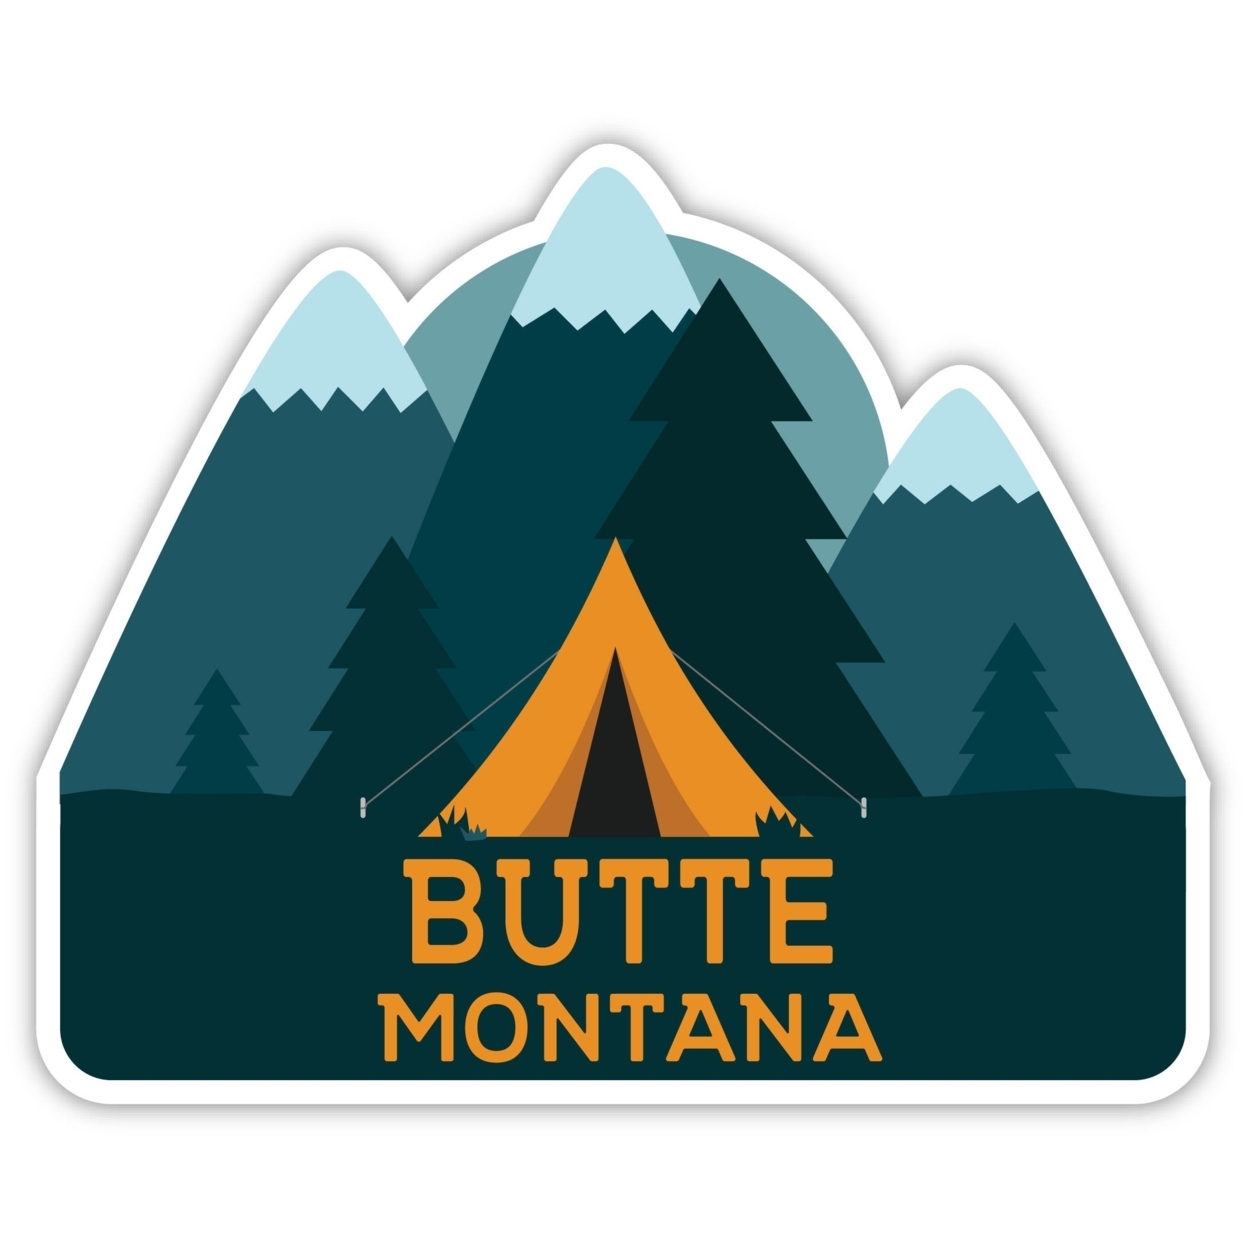 Butte Montana Souvenir Decorative Stickers (Choose Theme And Size) - Single Unit, 6-Inch, Tent